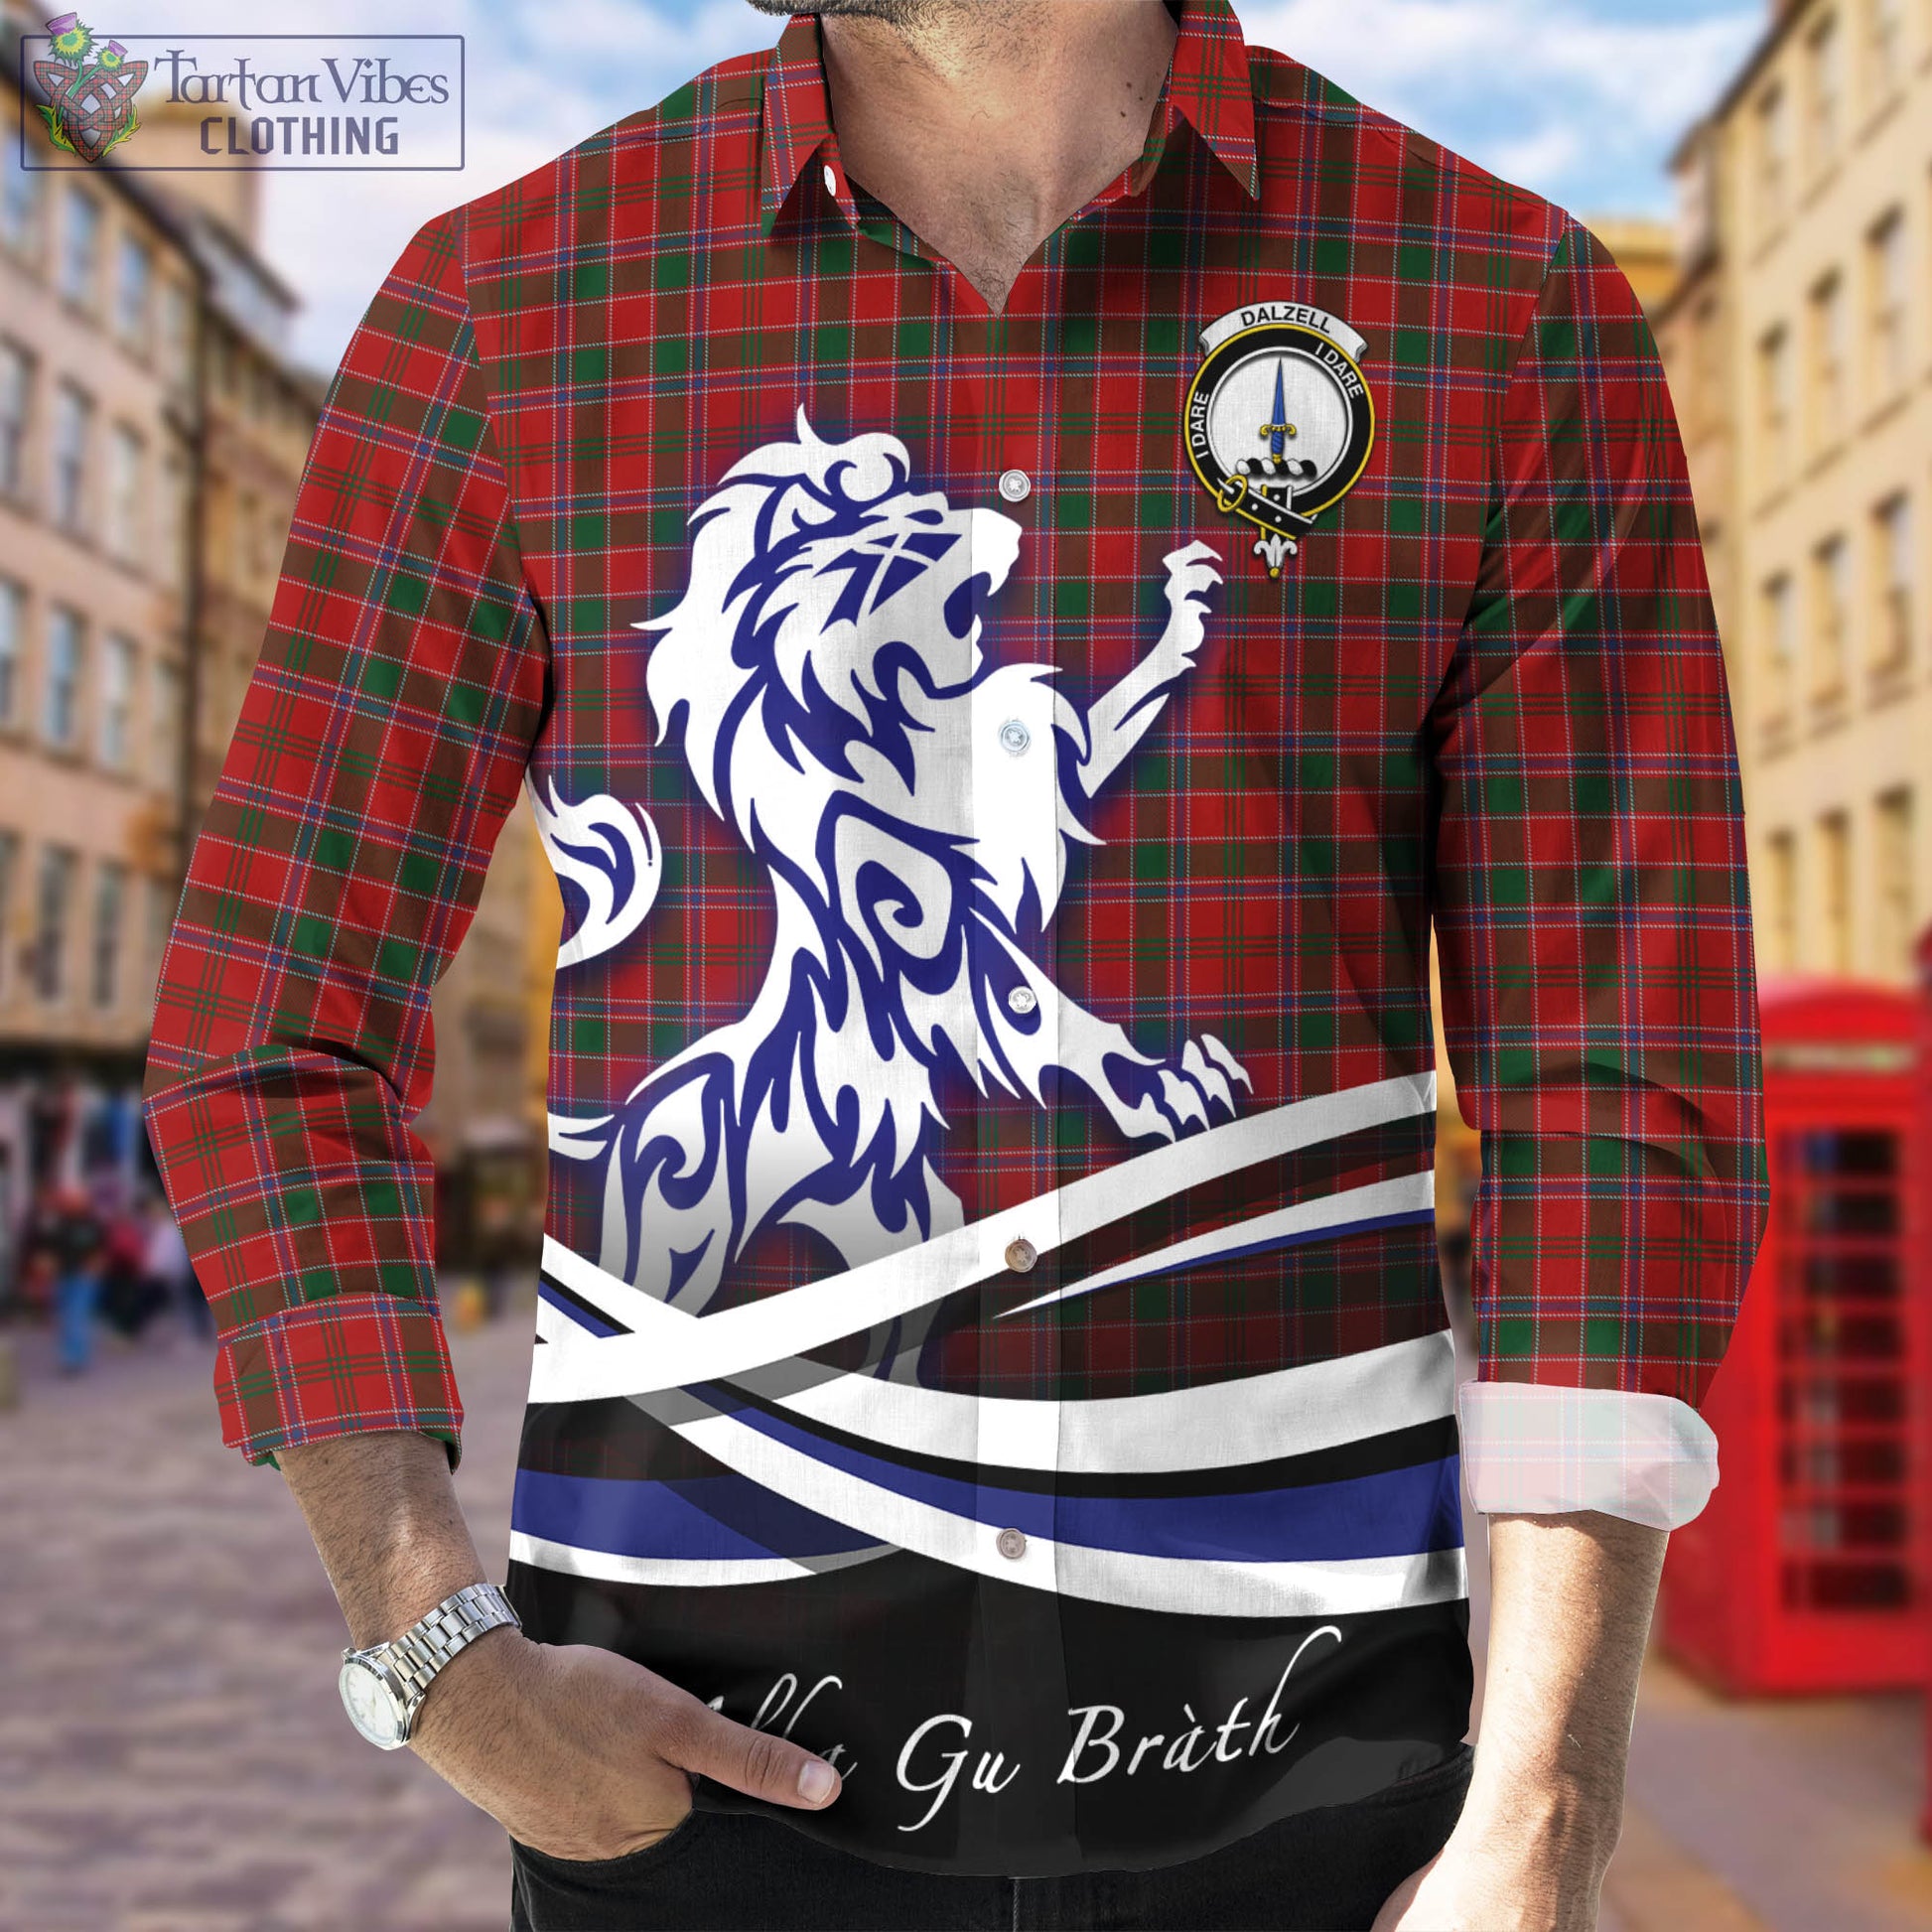 dalzell-dalziel-tartan-long-sleeve-button-up-shirt-with-alba-gu-brath-regal-lion-emblem